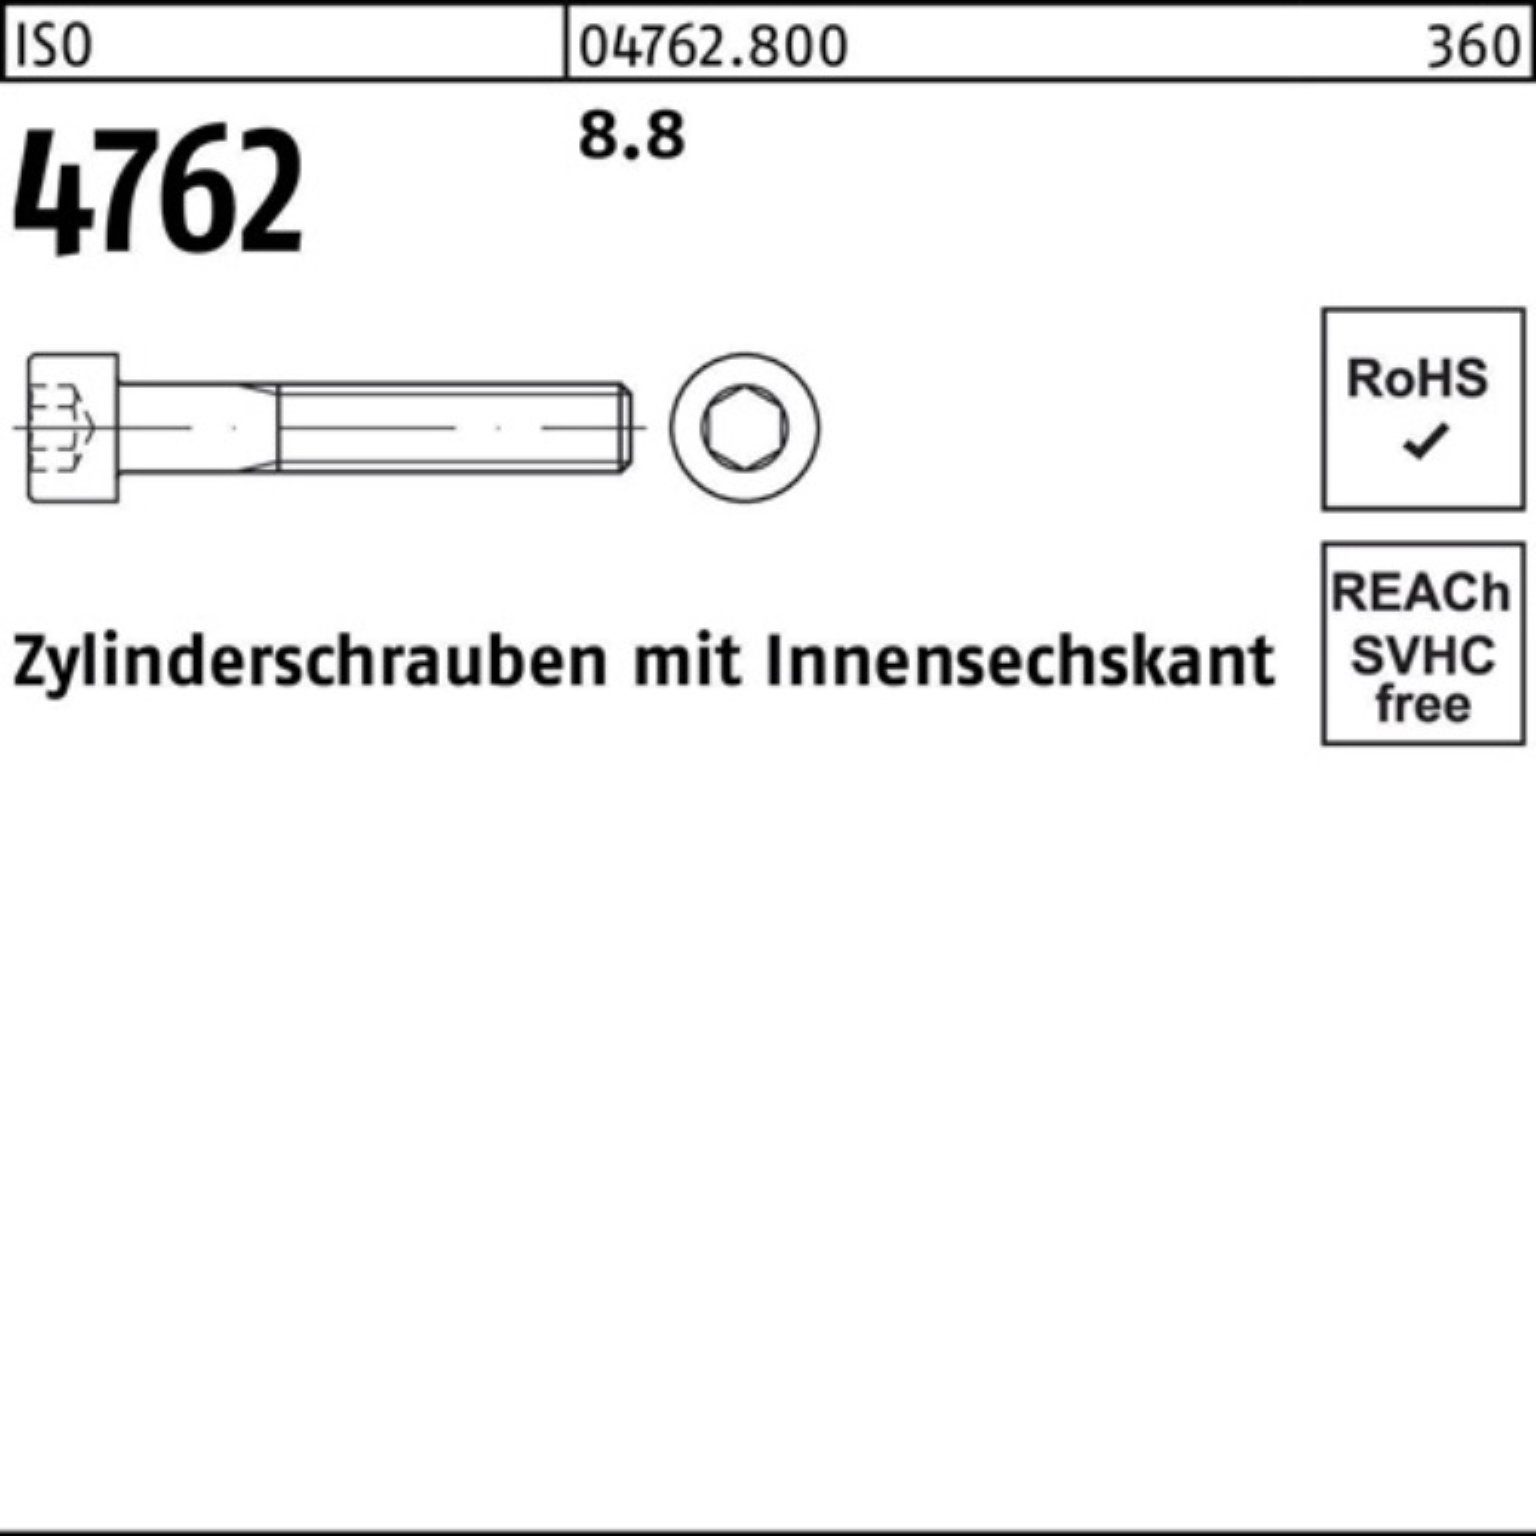 Pack 8.8 Reyher Zylinderschraube 4762 25 Zylinderschraube ISO Innen-6kt Stück M18x 100er 160